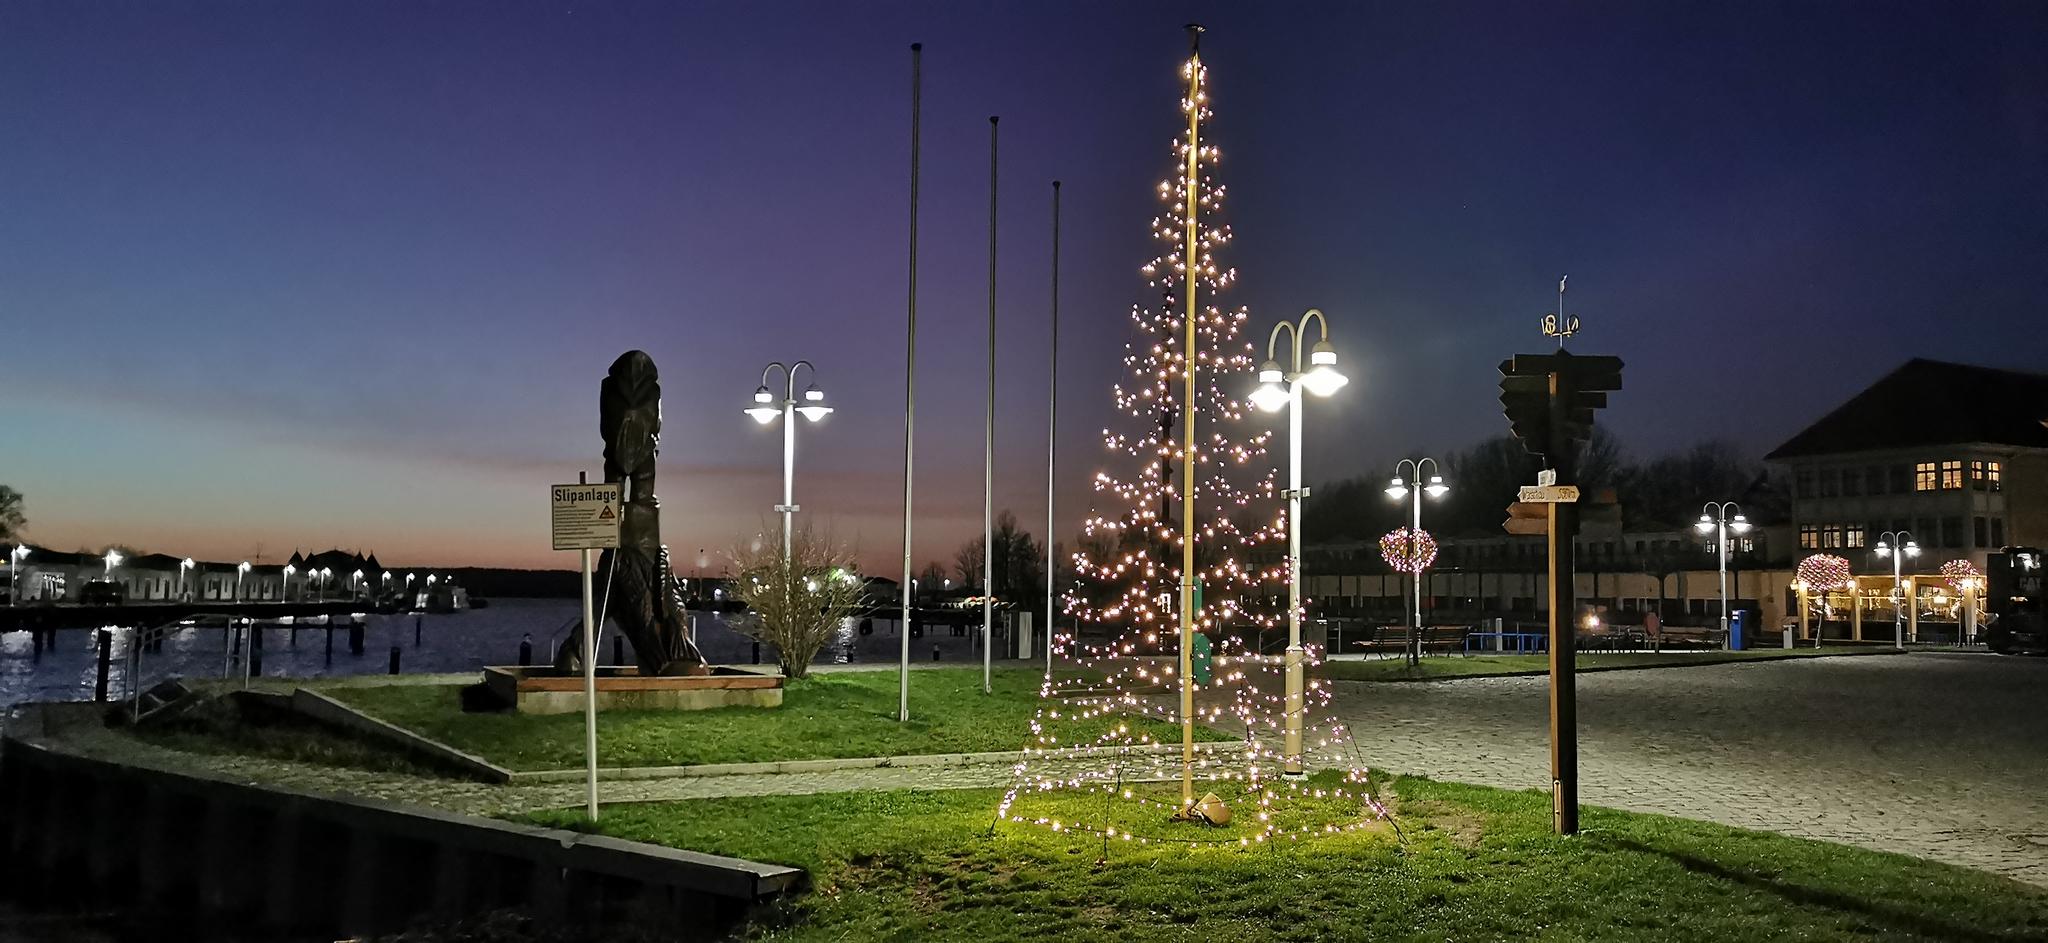 Hafen von Karlshagen mit beleuchtetem Weihnachtsbaum